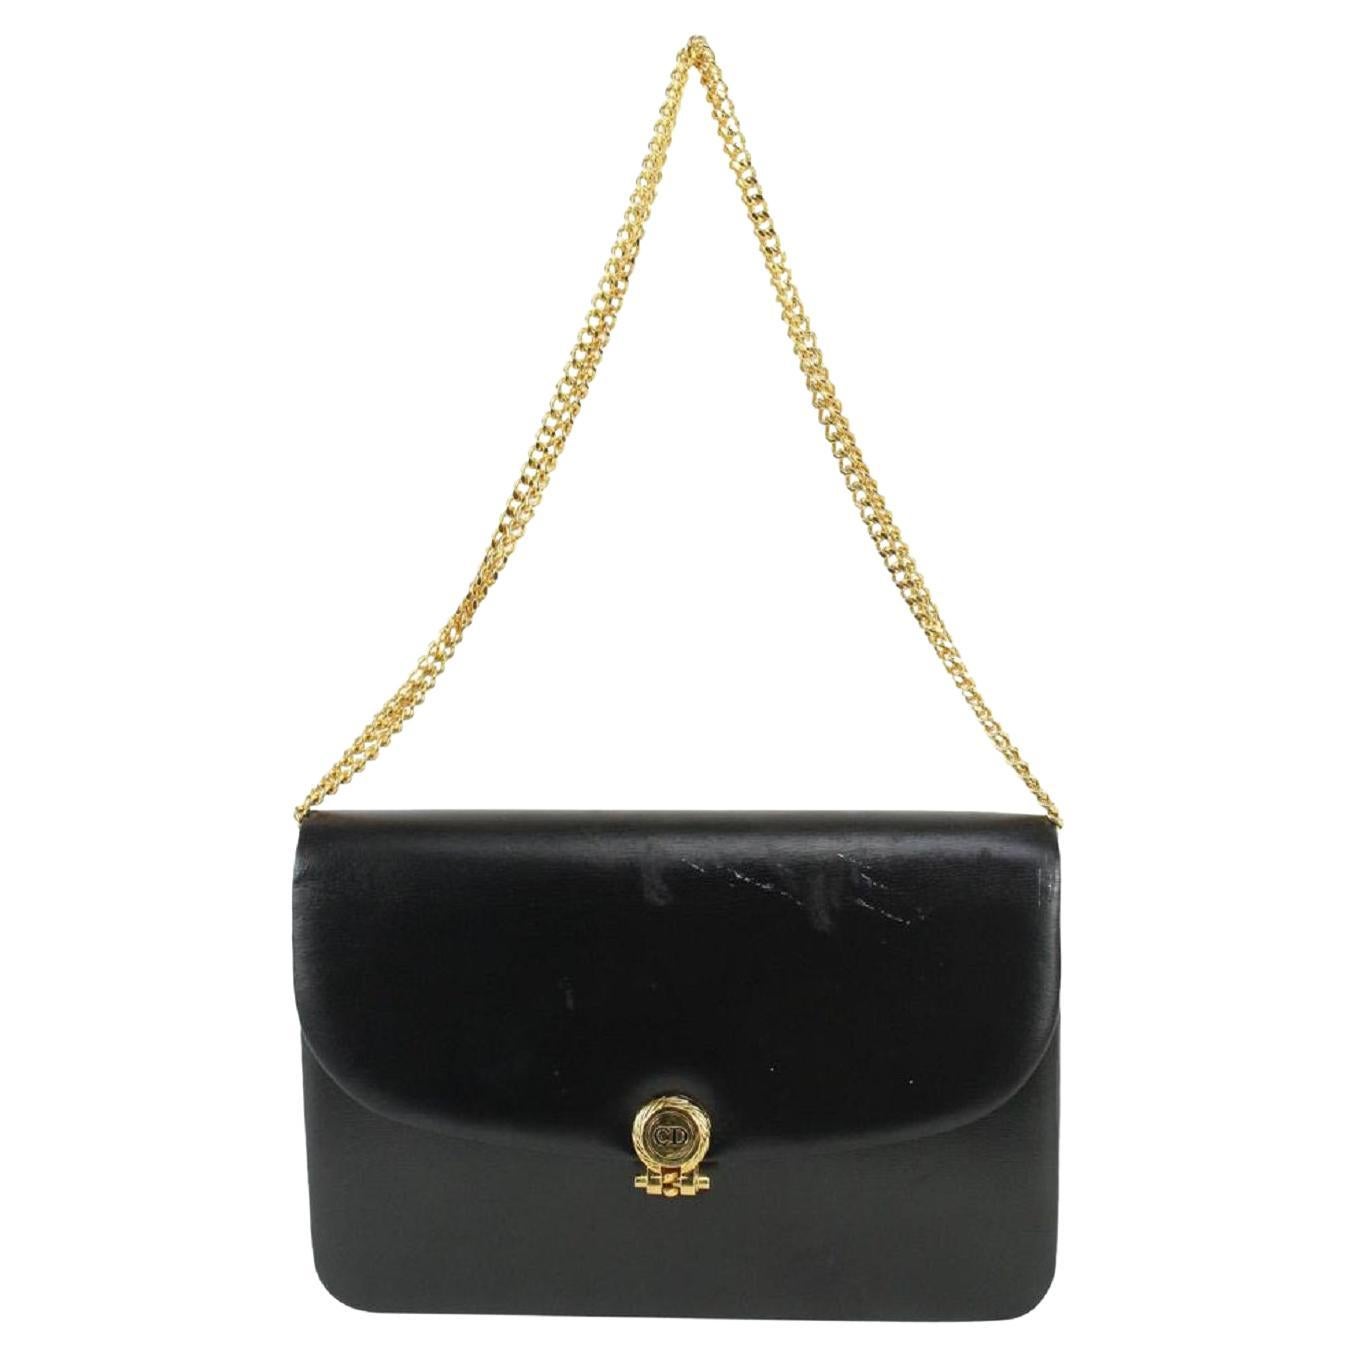 Dior Black Box Calf Leather Flap Chain Bag 827da9